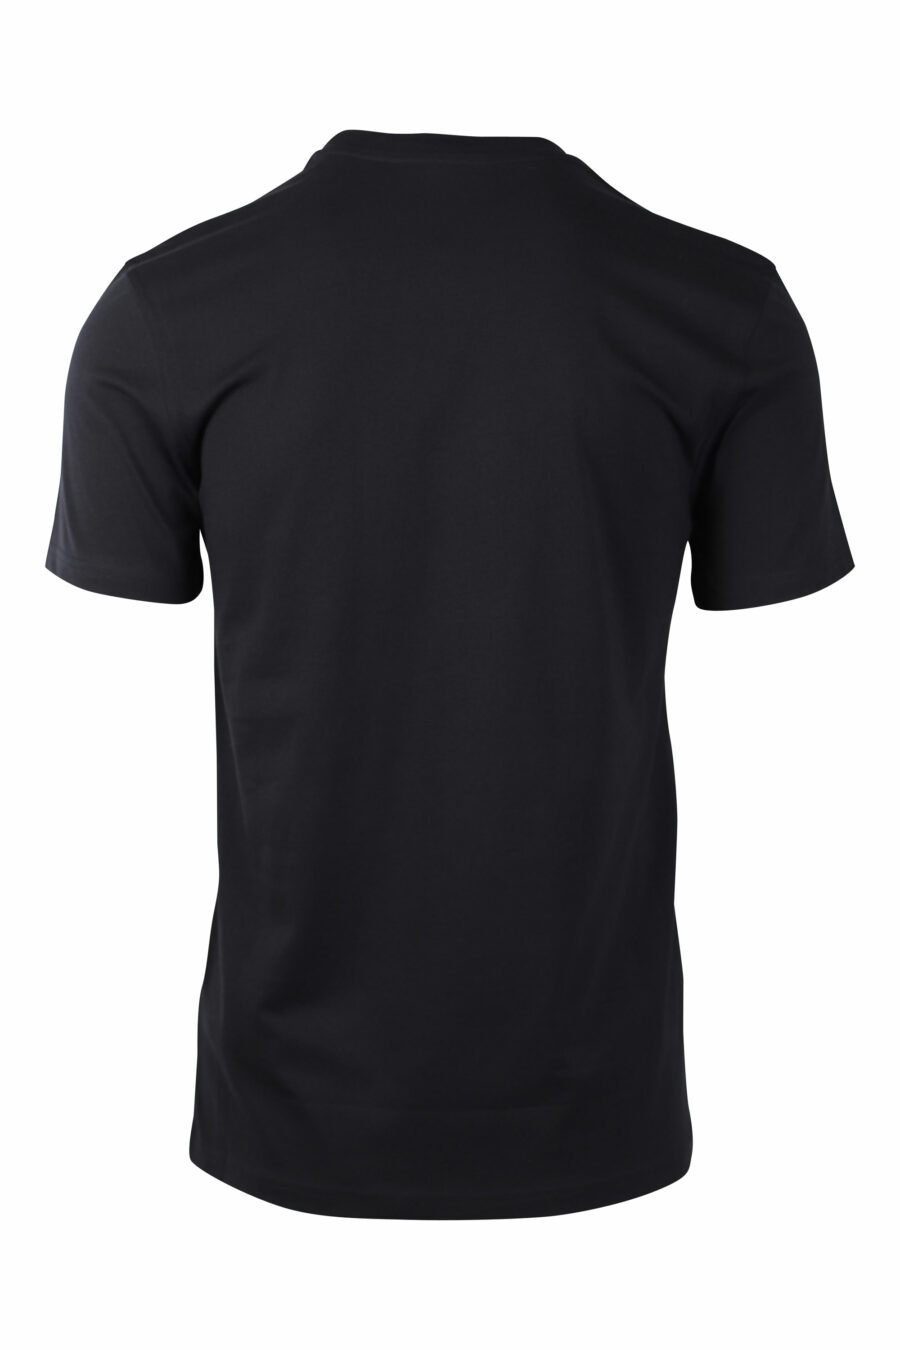 T-shirt noir avec maxilogue argenté - IMG 1468